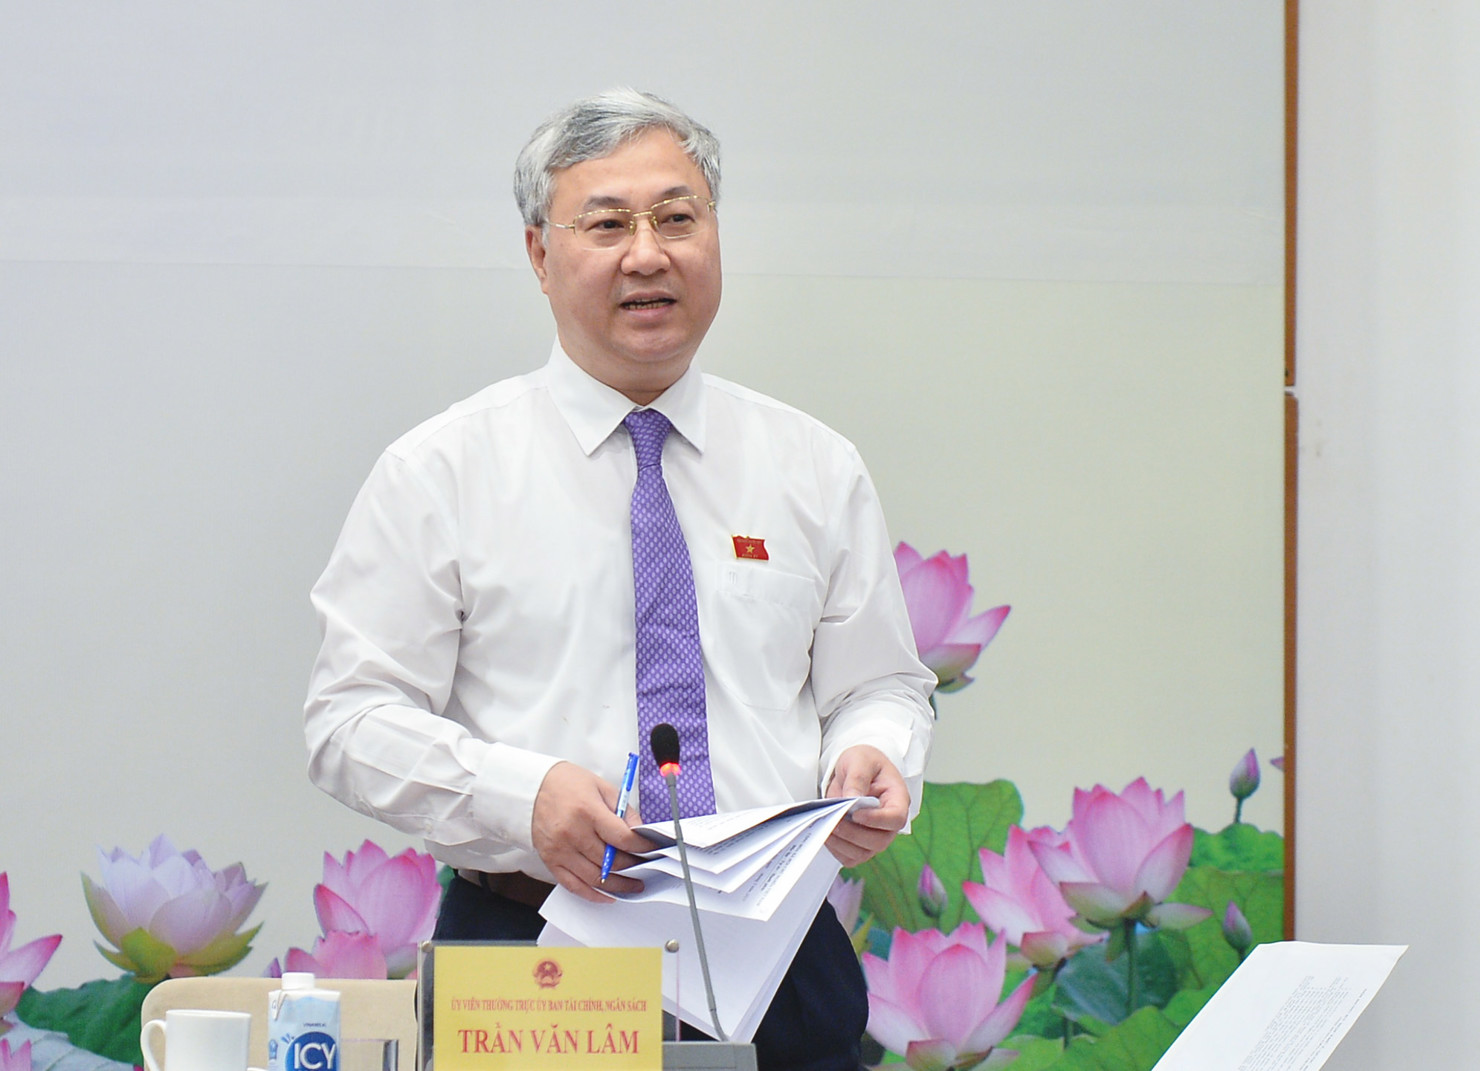 Ủy viên Thường trực Ủy ban Tài chính, Ngân sách Trần Văn Lâm trả lời câu hỏi của phóng viên tại buổi họp báo sáng 19/.